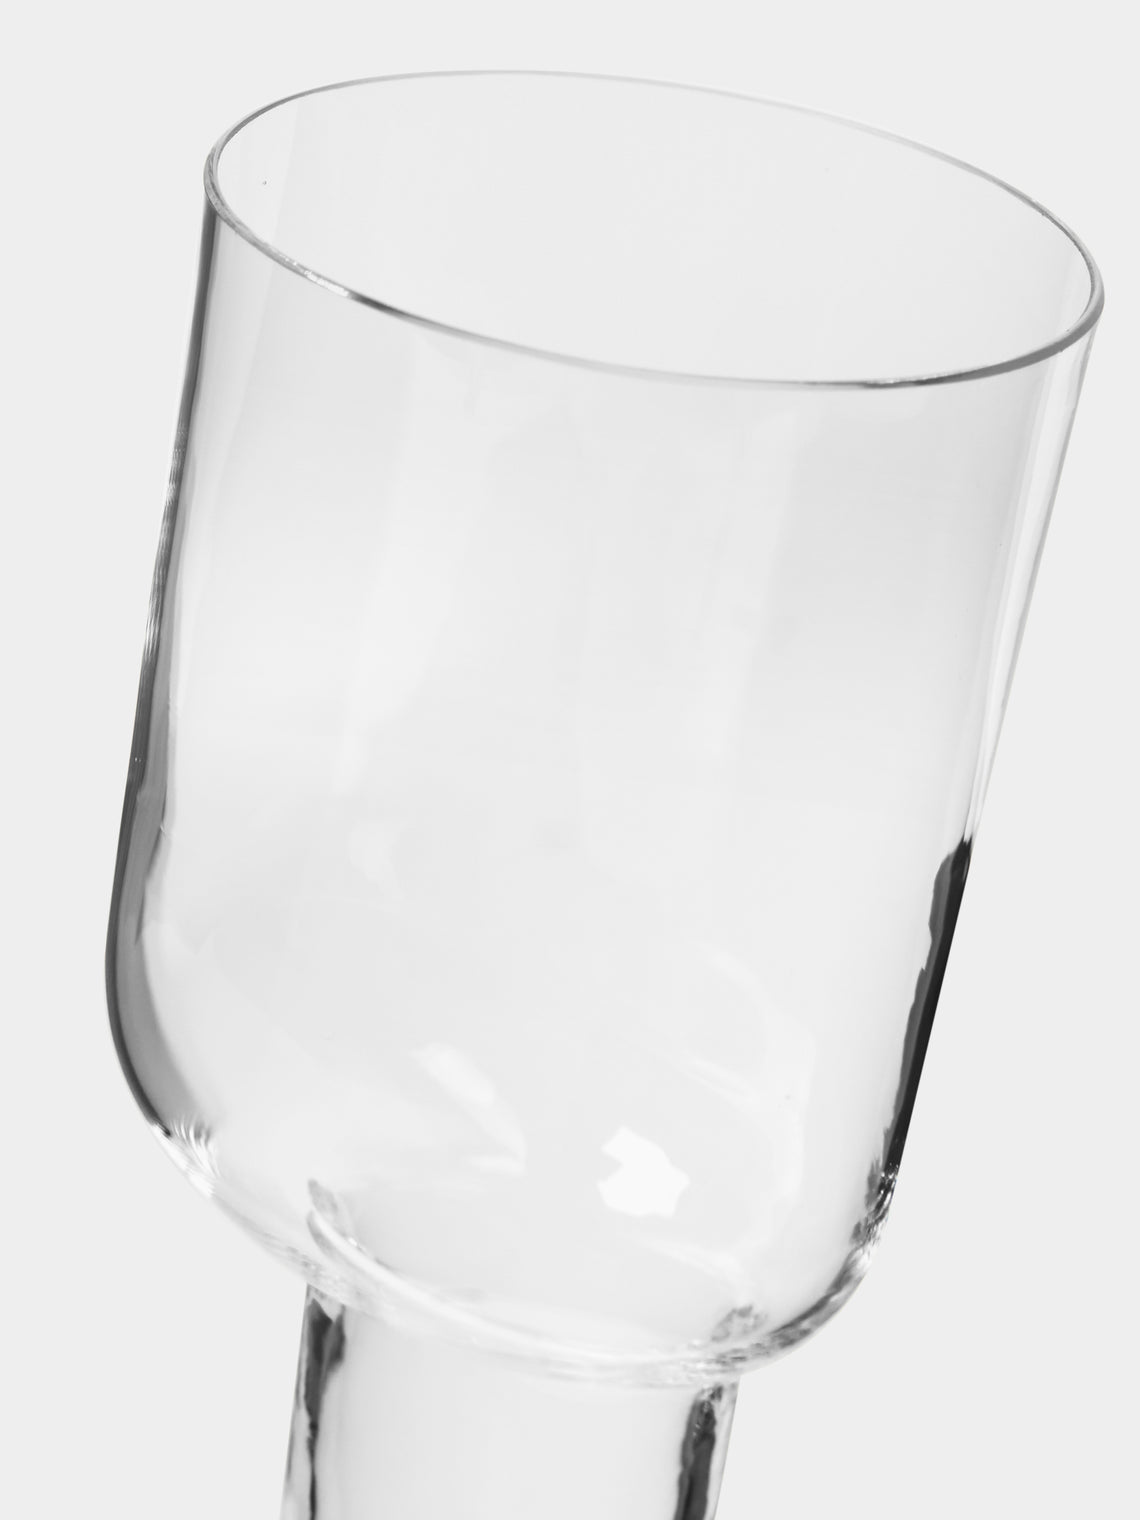 Carlo Moretti - Asymmetric Hand-Blown Murano Wine Glass - ABASK